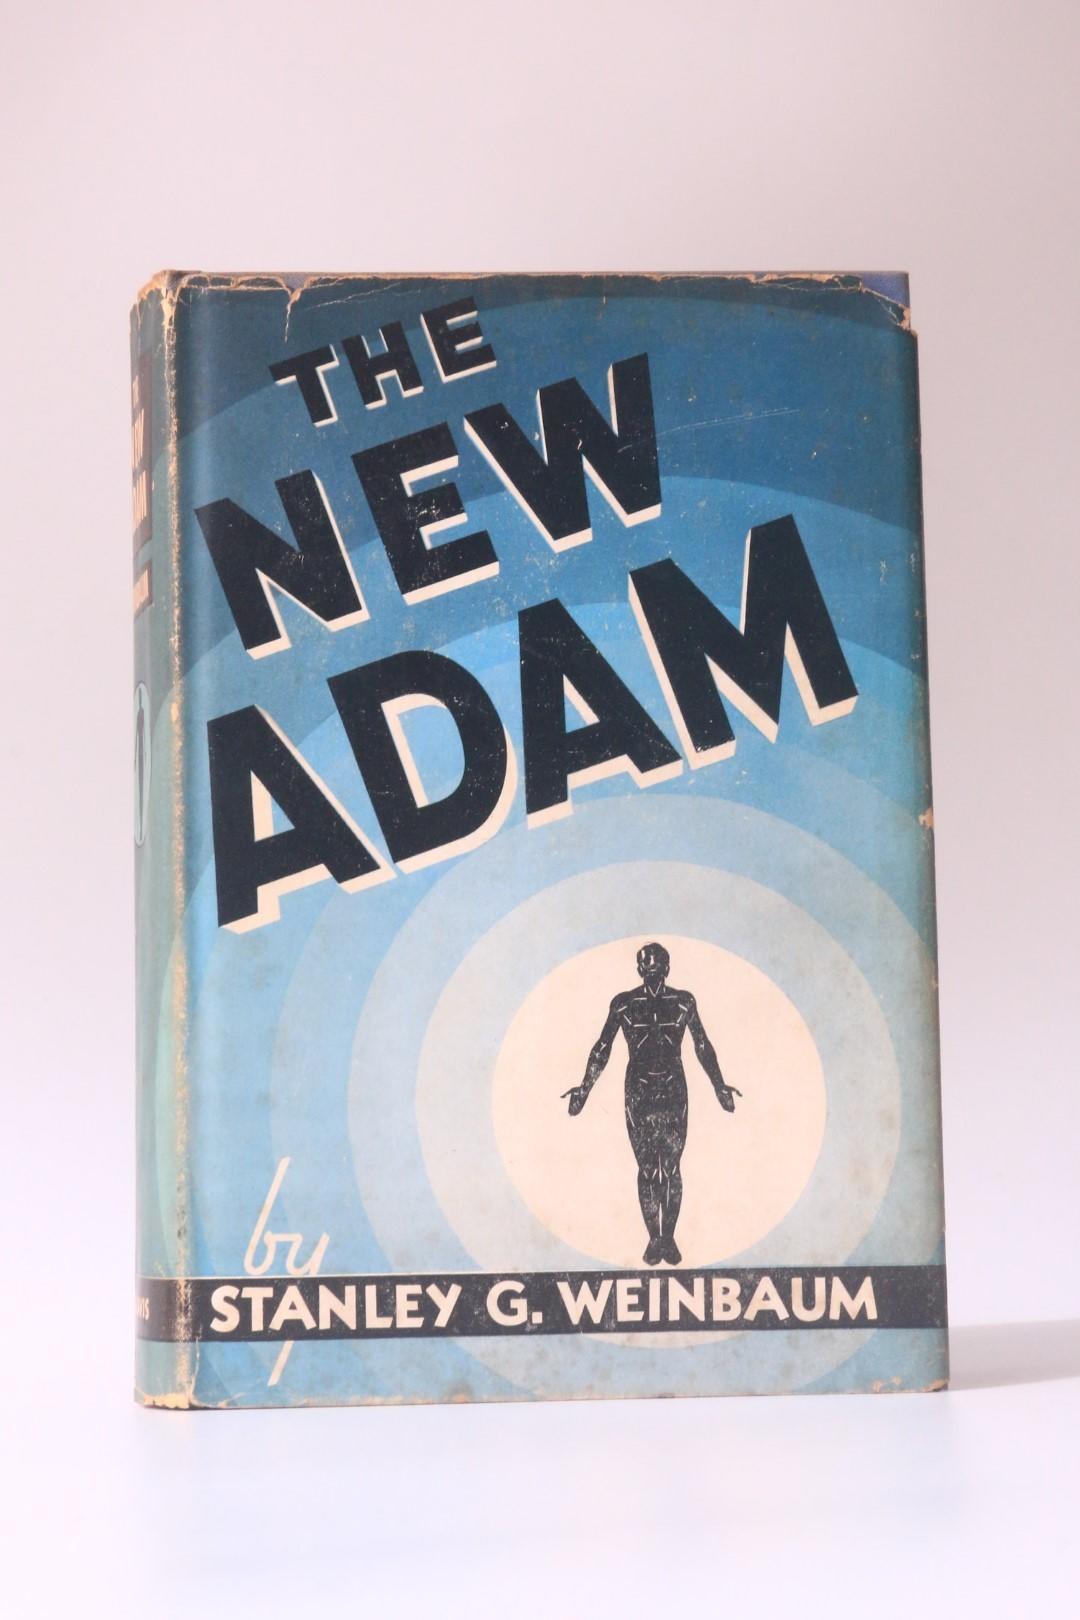 Stanley G. Weinbaum - The New Adam - Ziff-Davis, 1939, First Edition.